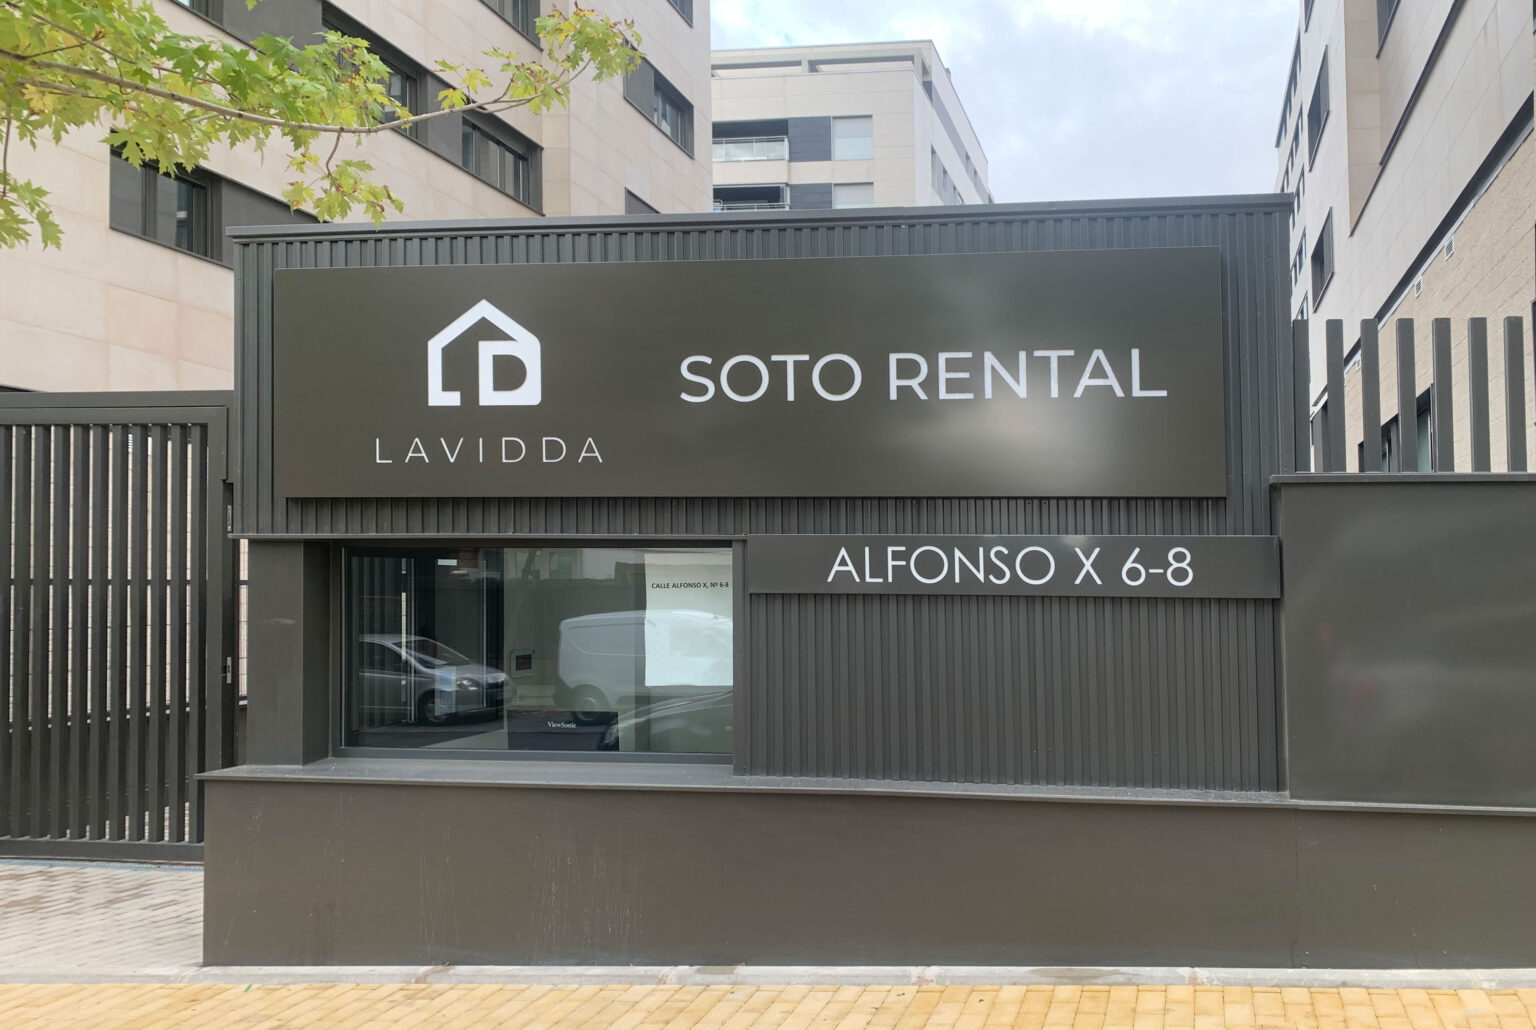 LAVIDDA Promoción Soto Rental Portal